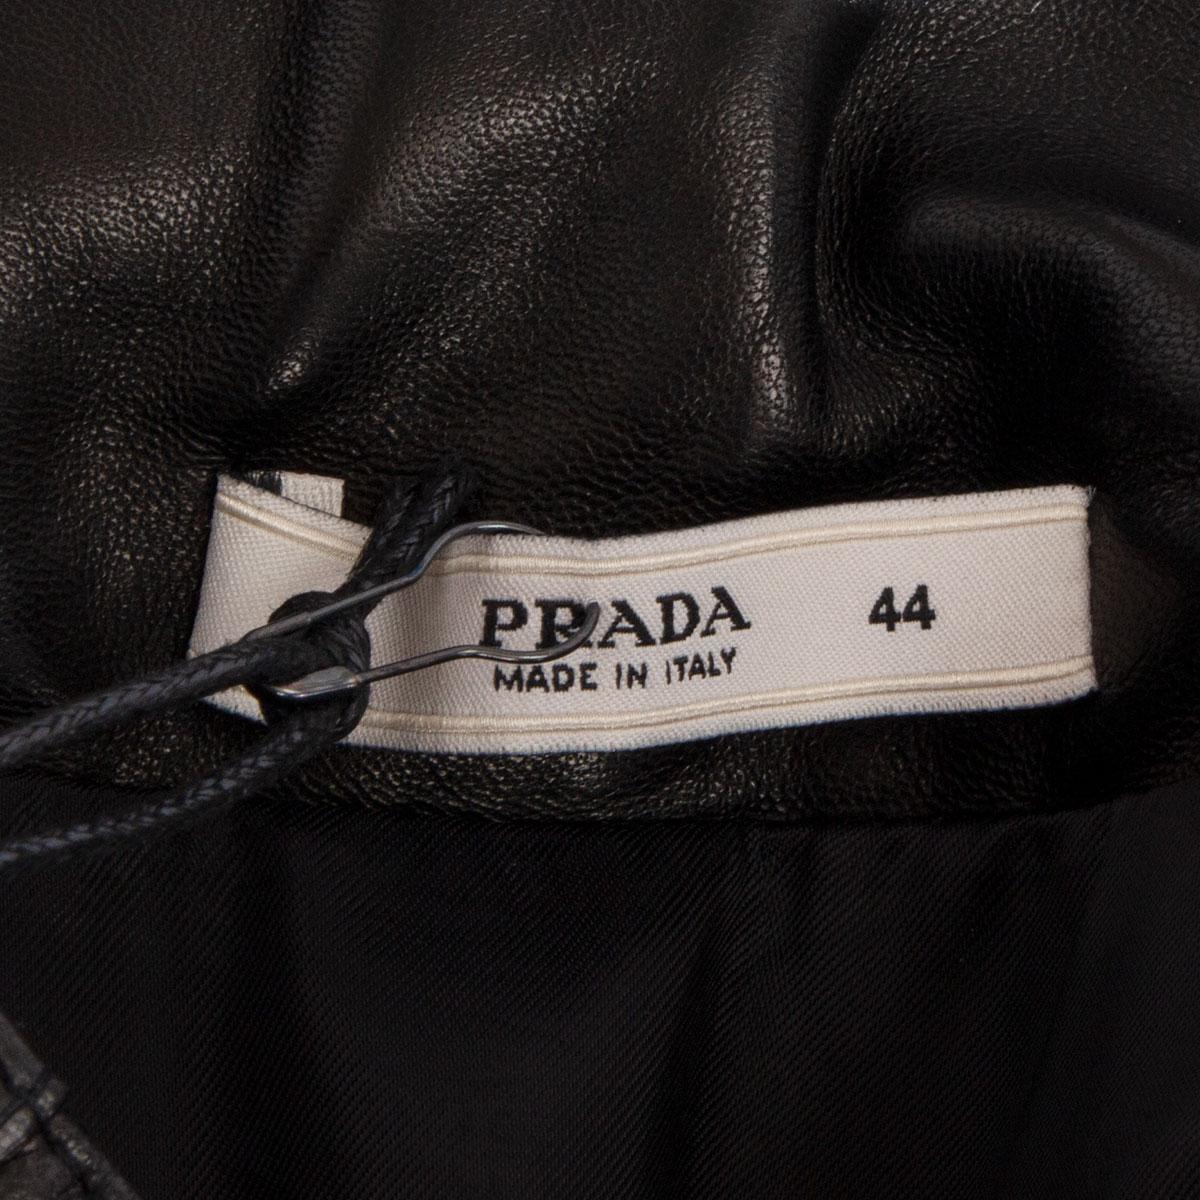 Women's PRADA black leather Flared Skirt 44 L